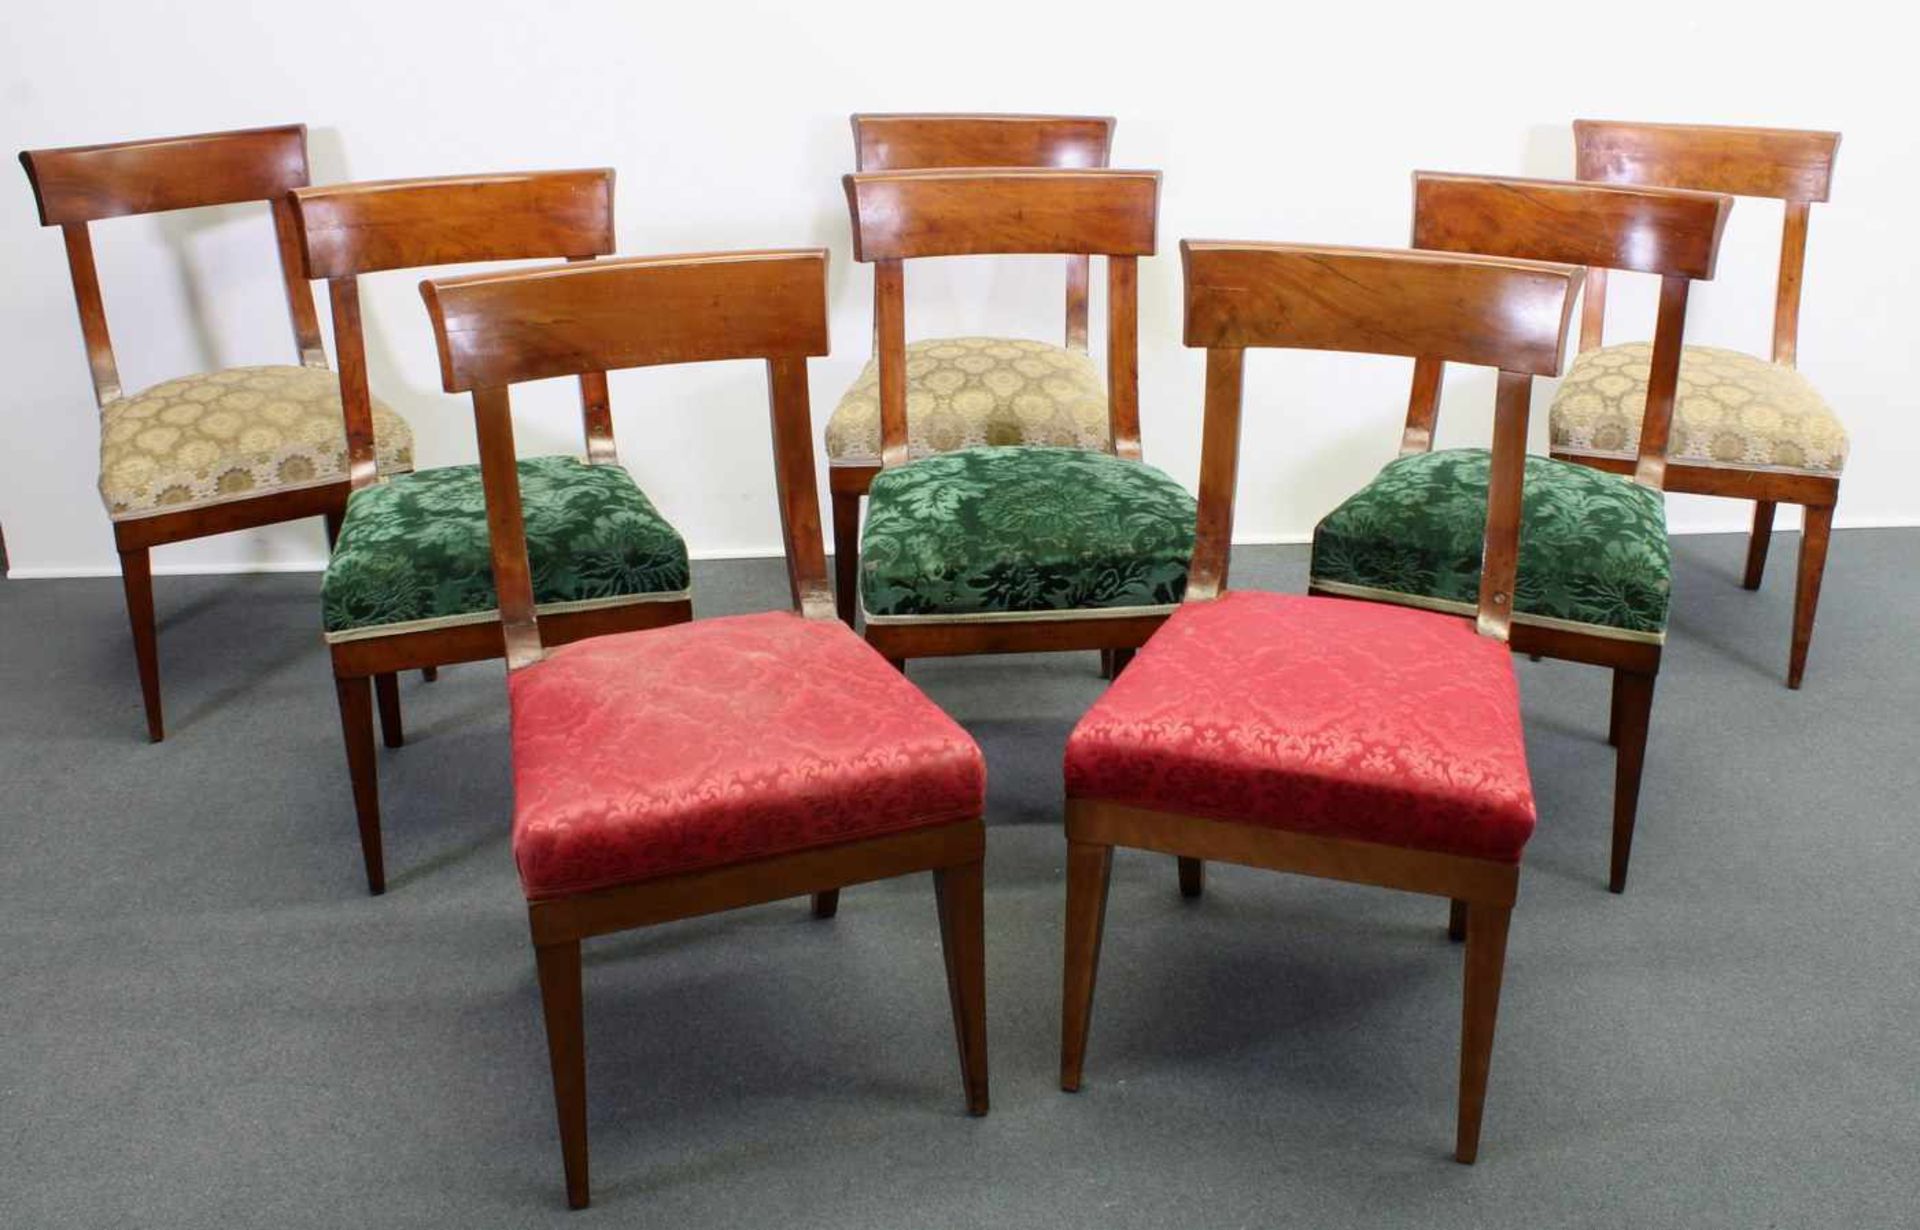 8 Stühle, Biedermeier, um 1825, Mahagoni, Sitzpolster mit unterschiedlichen Bezügen, diverse alte